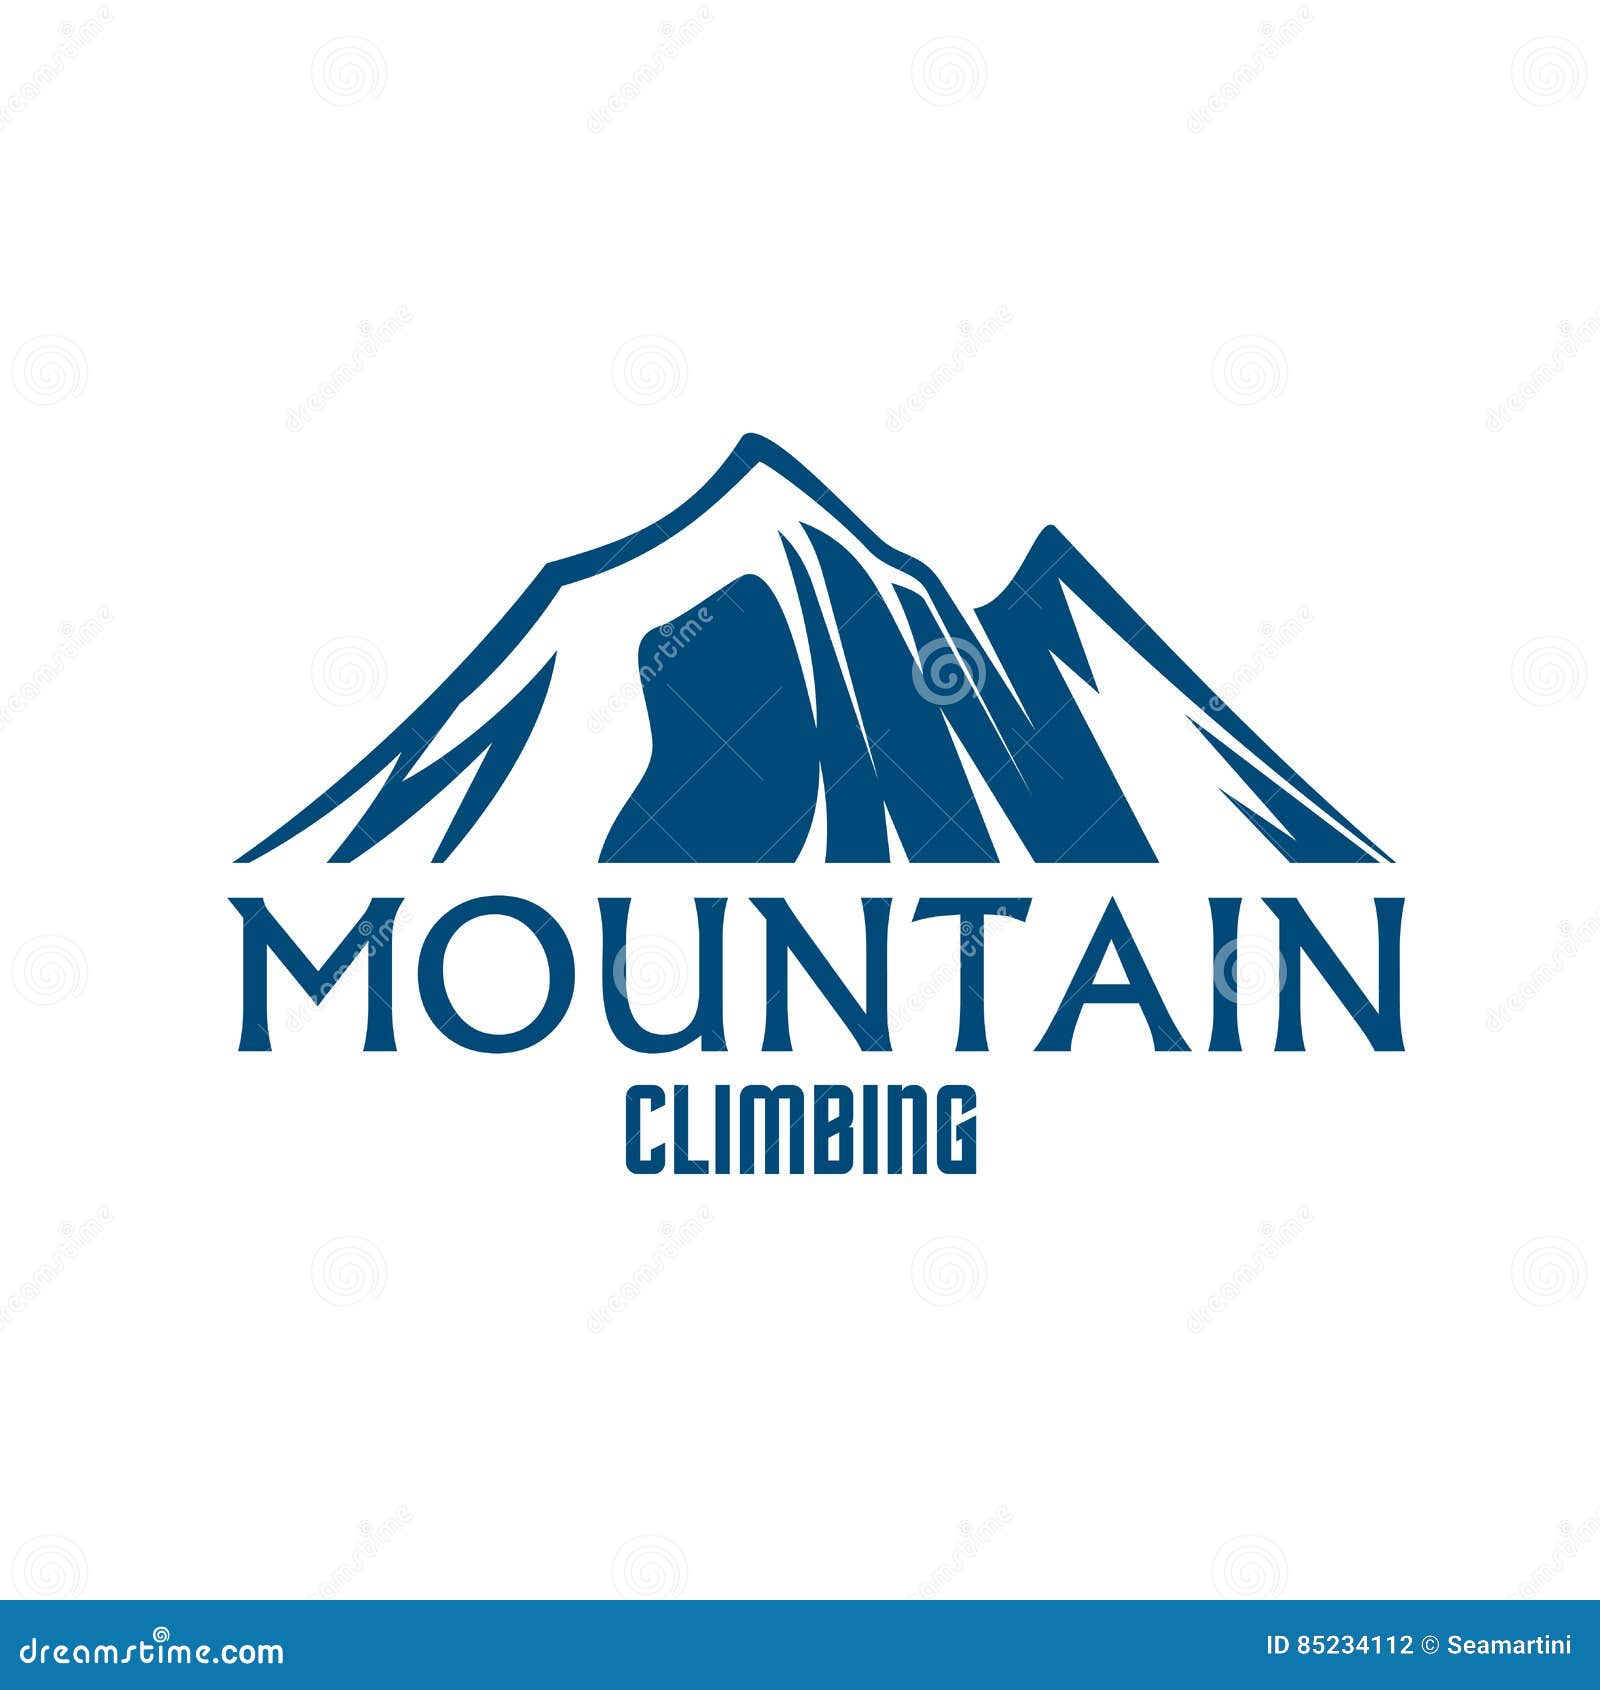 Mountain Climbing Sport Vector Isolated Icon Stock Vector ...